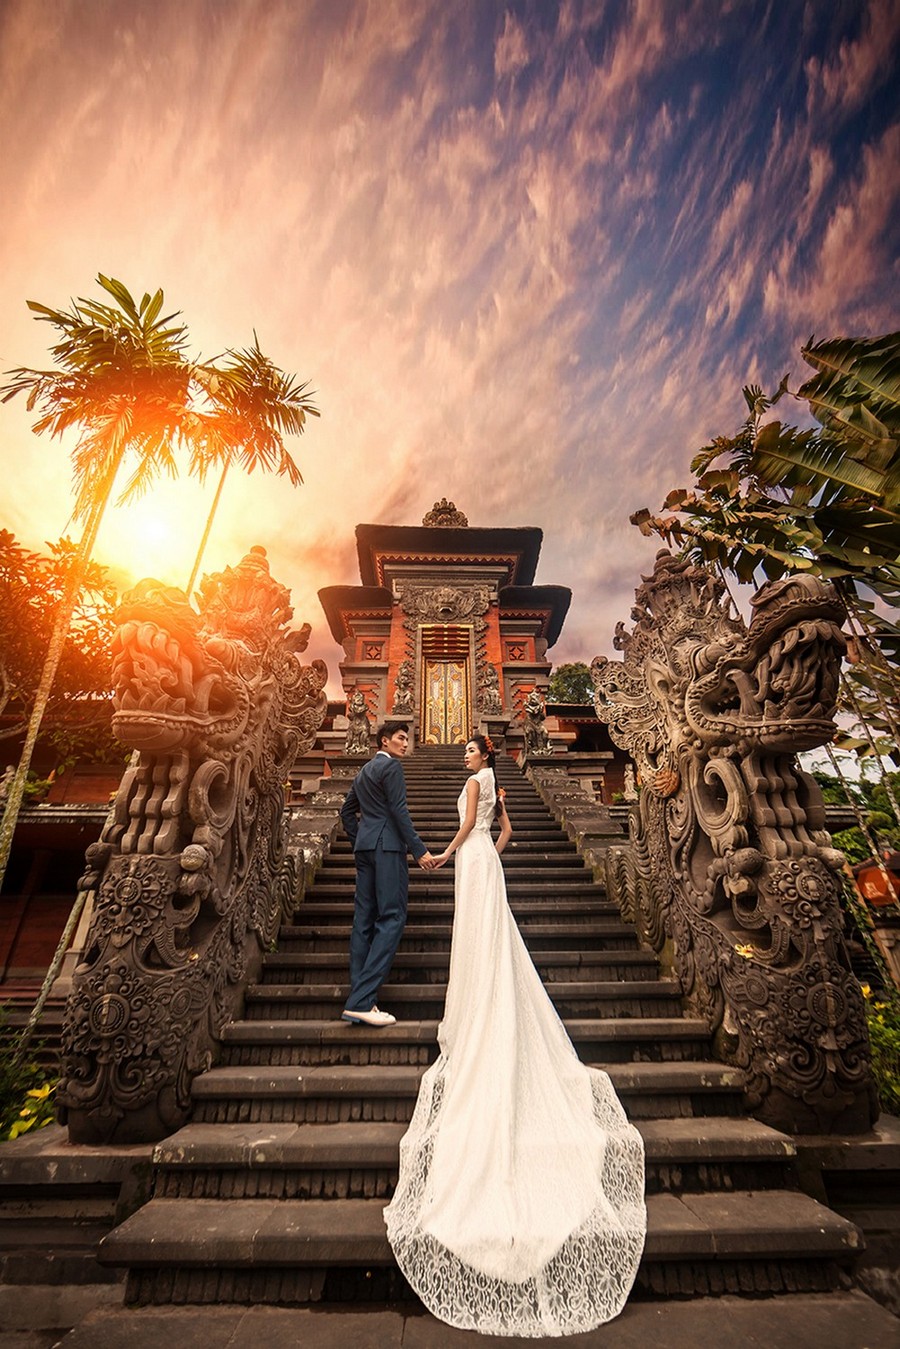 海外婚紗,巴厘島 婚紗攝影,巴厘島 婚紗照,巴厘島拍婚紗,巴厘島 自助婚紗,海外婚紗 巴厘島